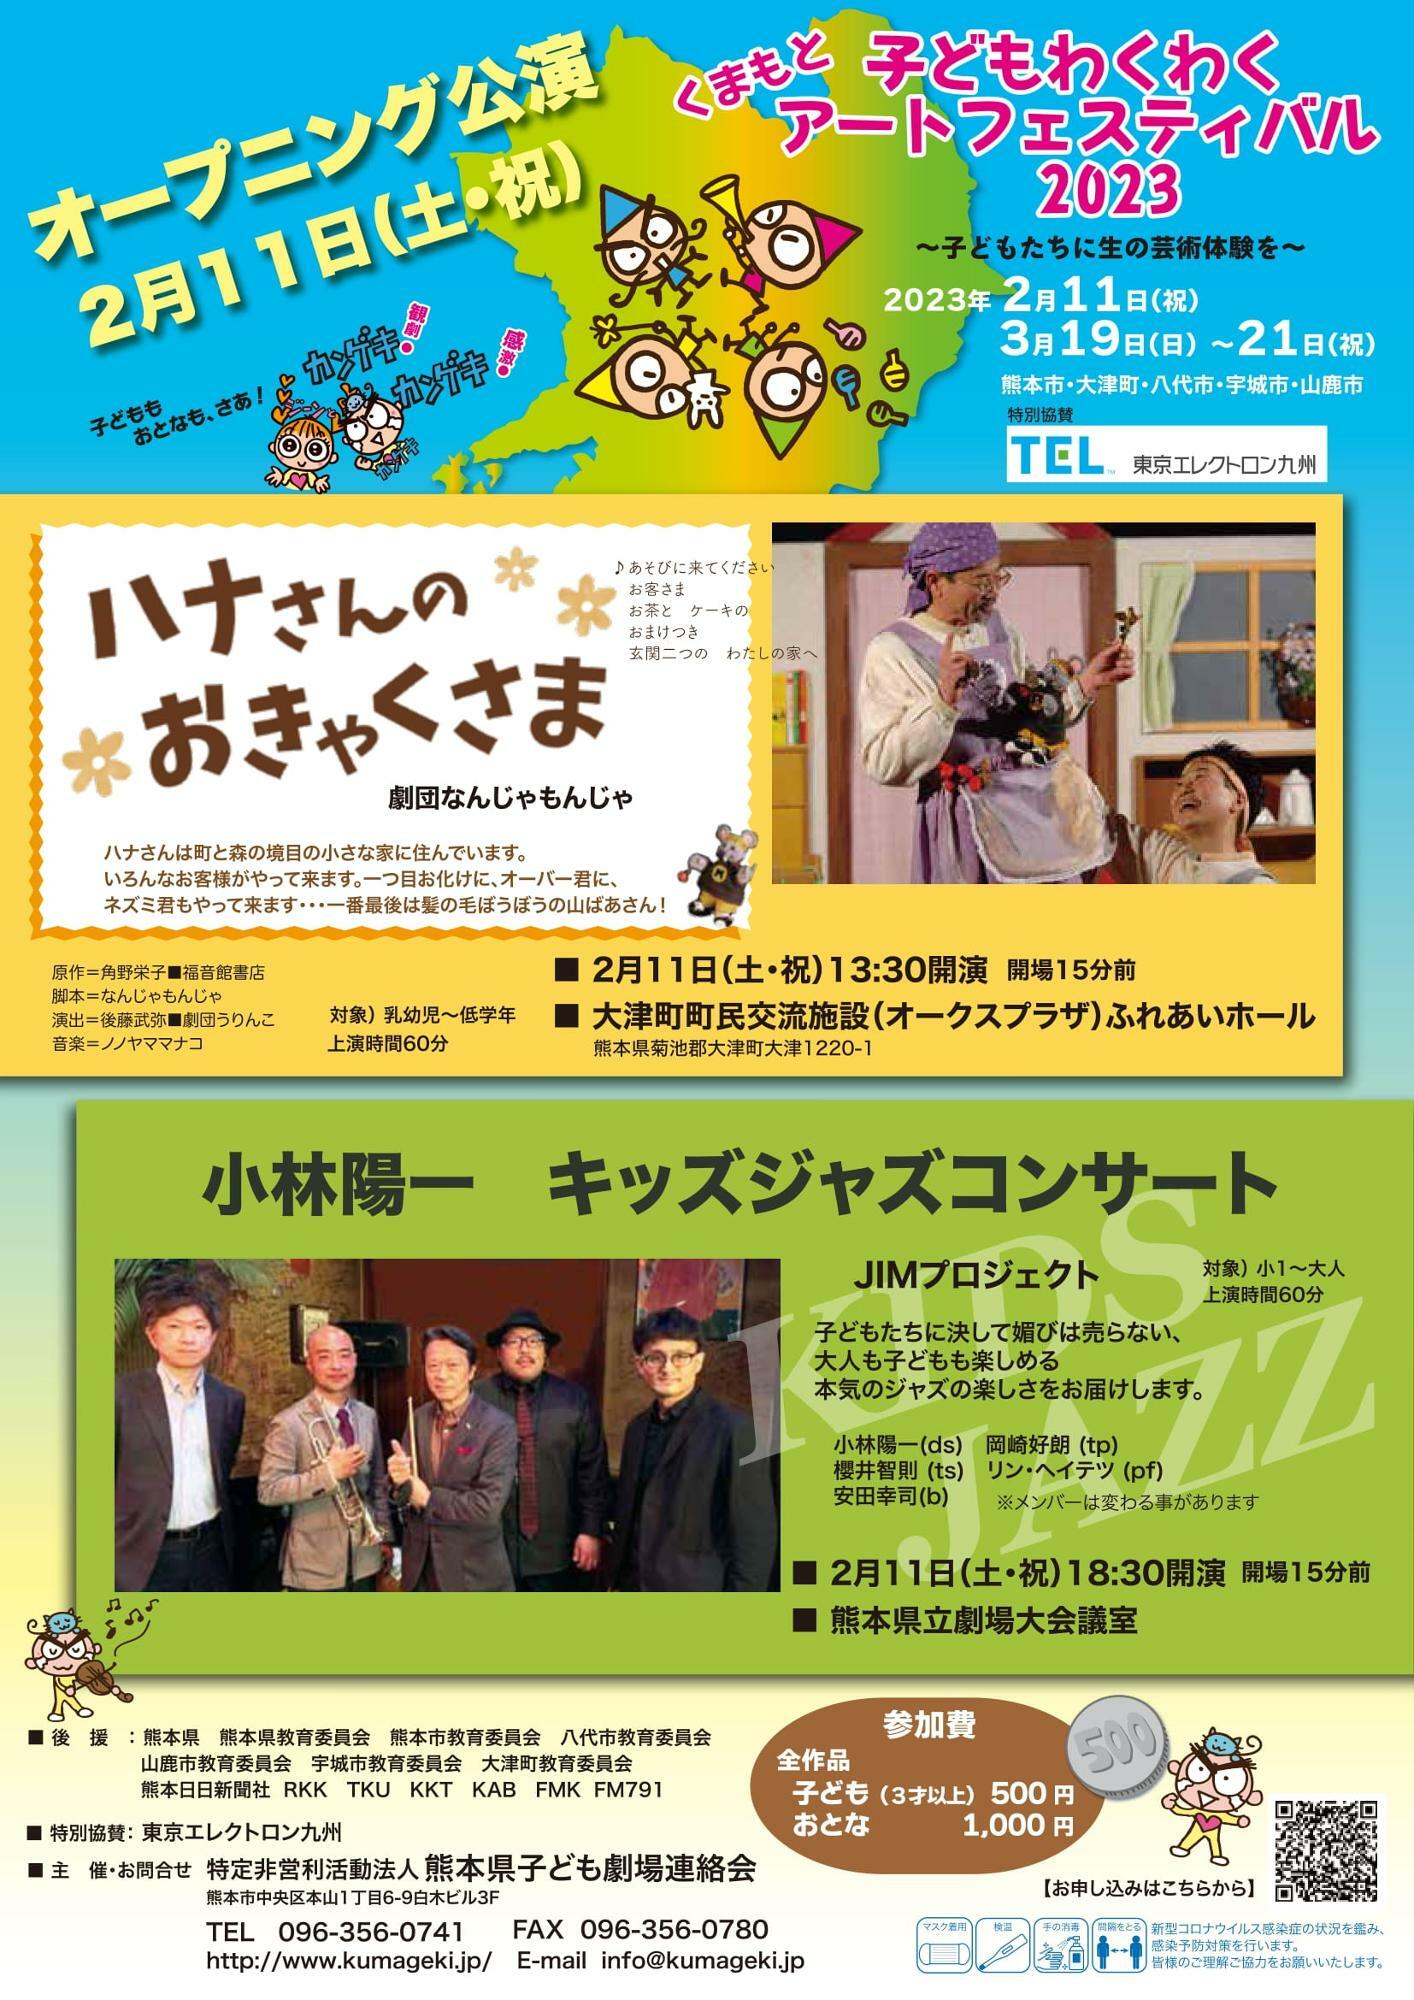 熊本市内で開催のキッズジャズコンサートは小学生以上が対象